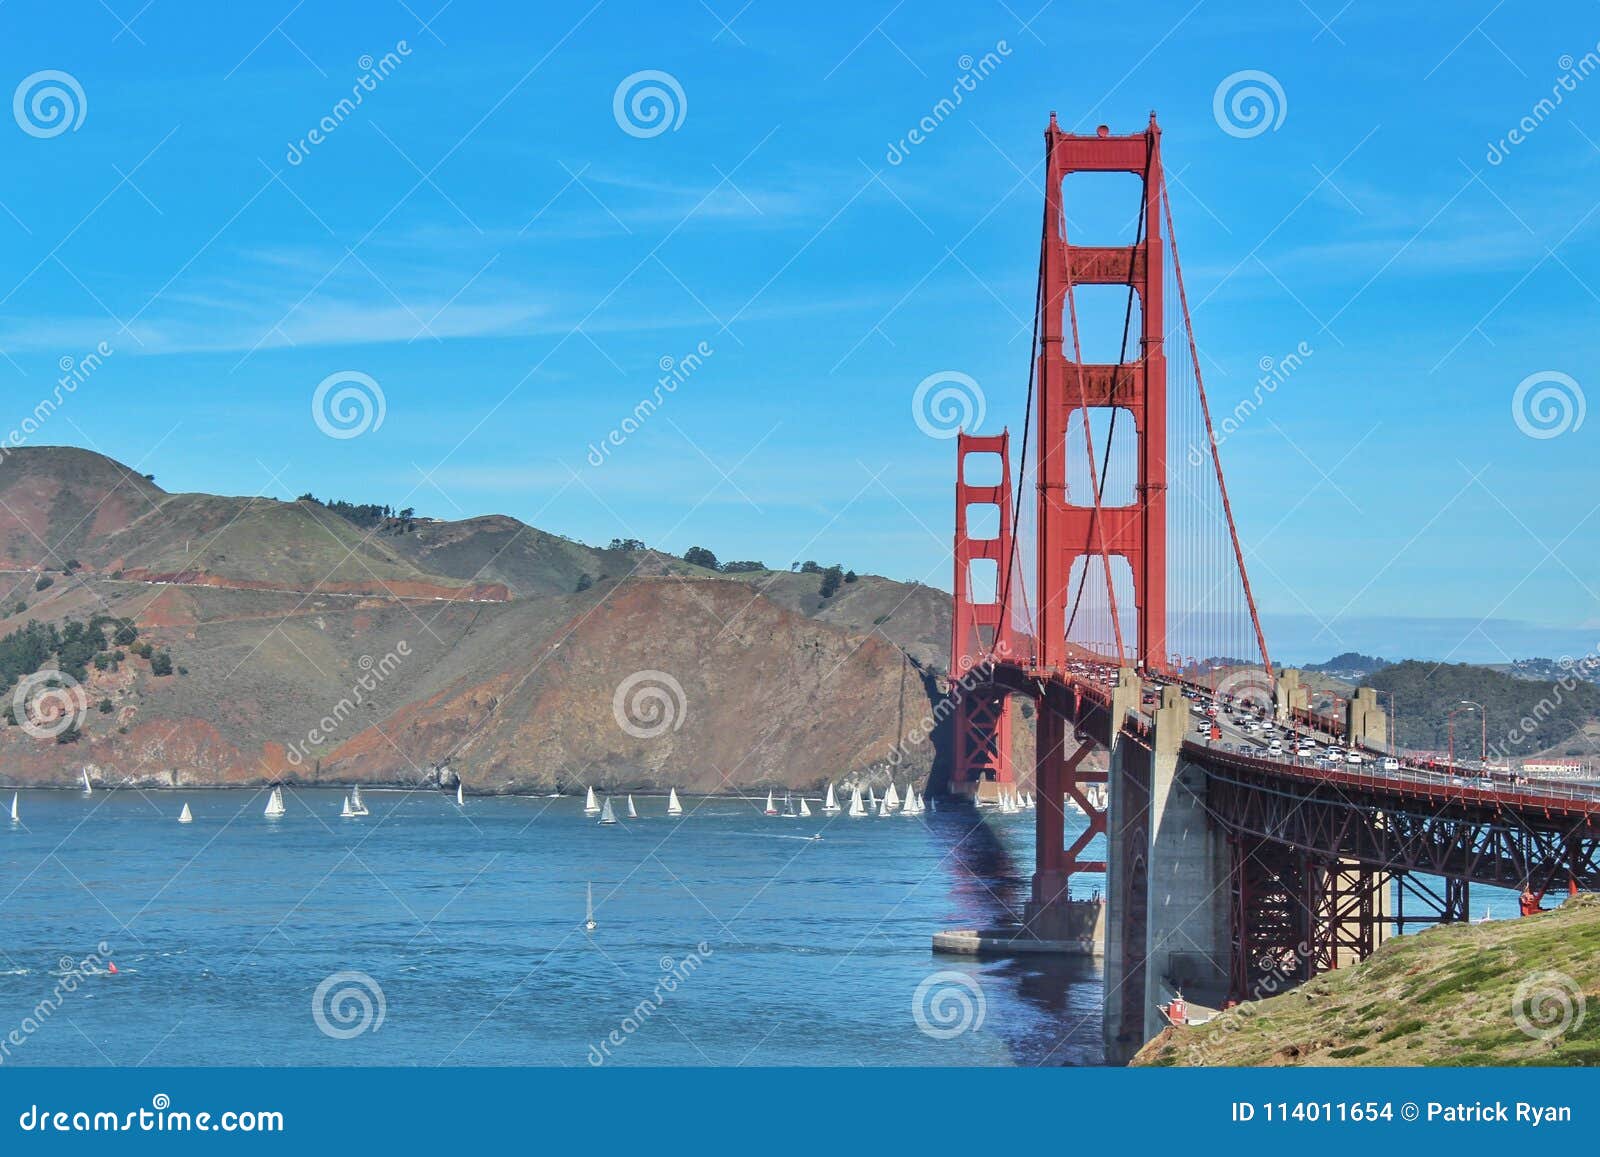 Suspensão Ros e fios. Um tiro de golden gate bridge em San Francisco Bay California